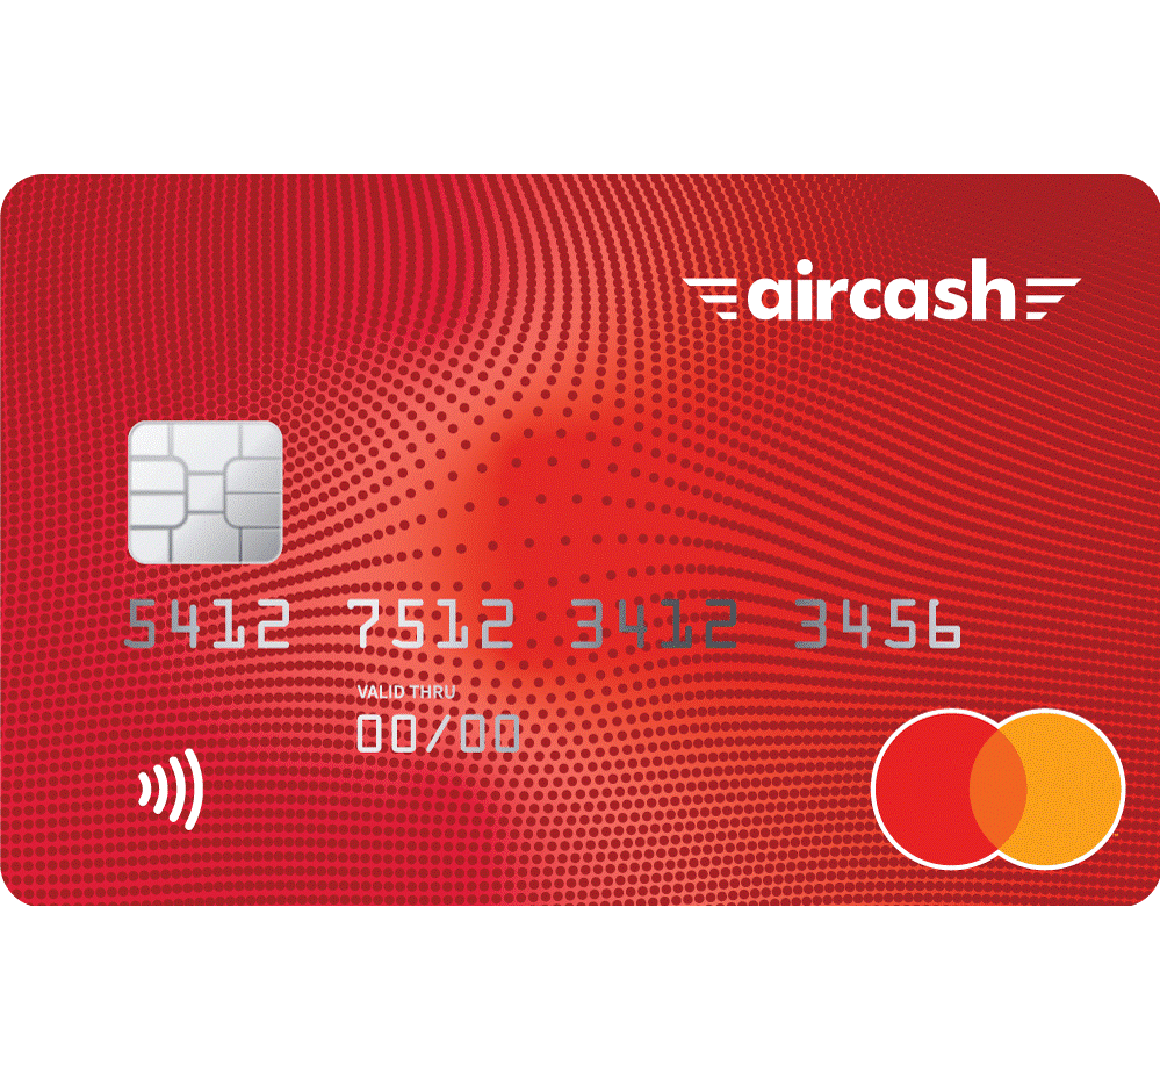 Aircash Mastercard® karticu kupite za 30 kuna i kontrolirajte je Aircash aplikacijom